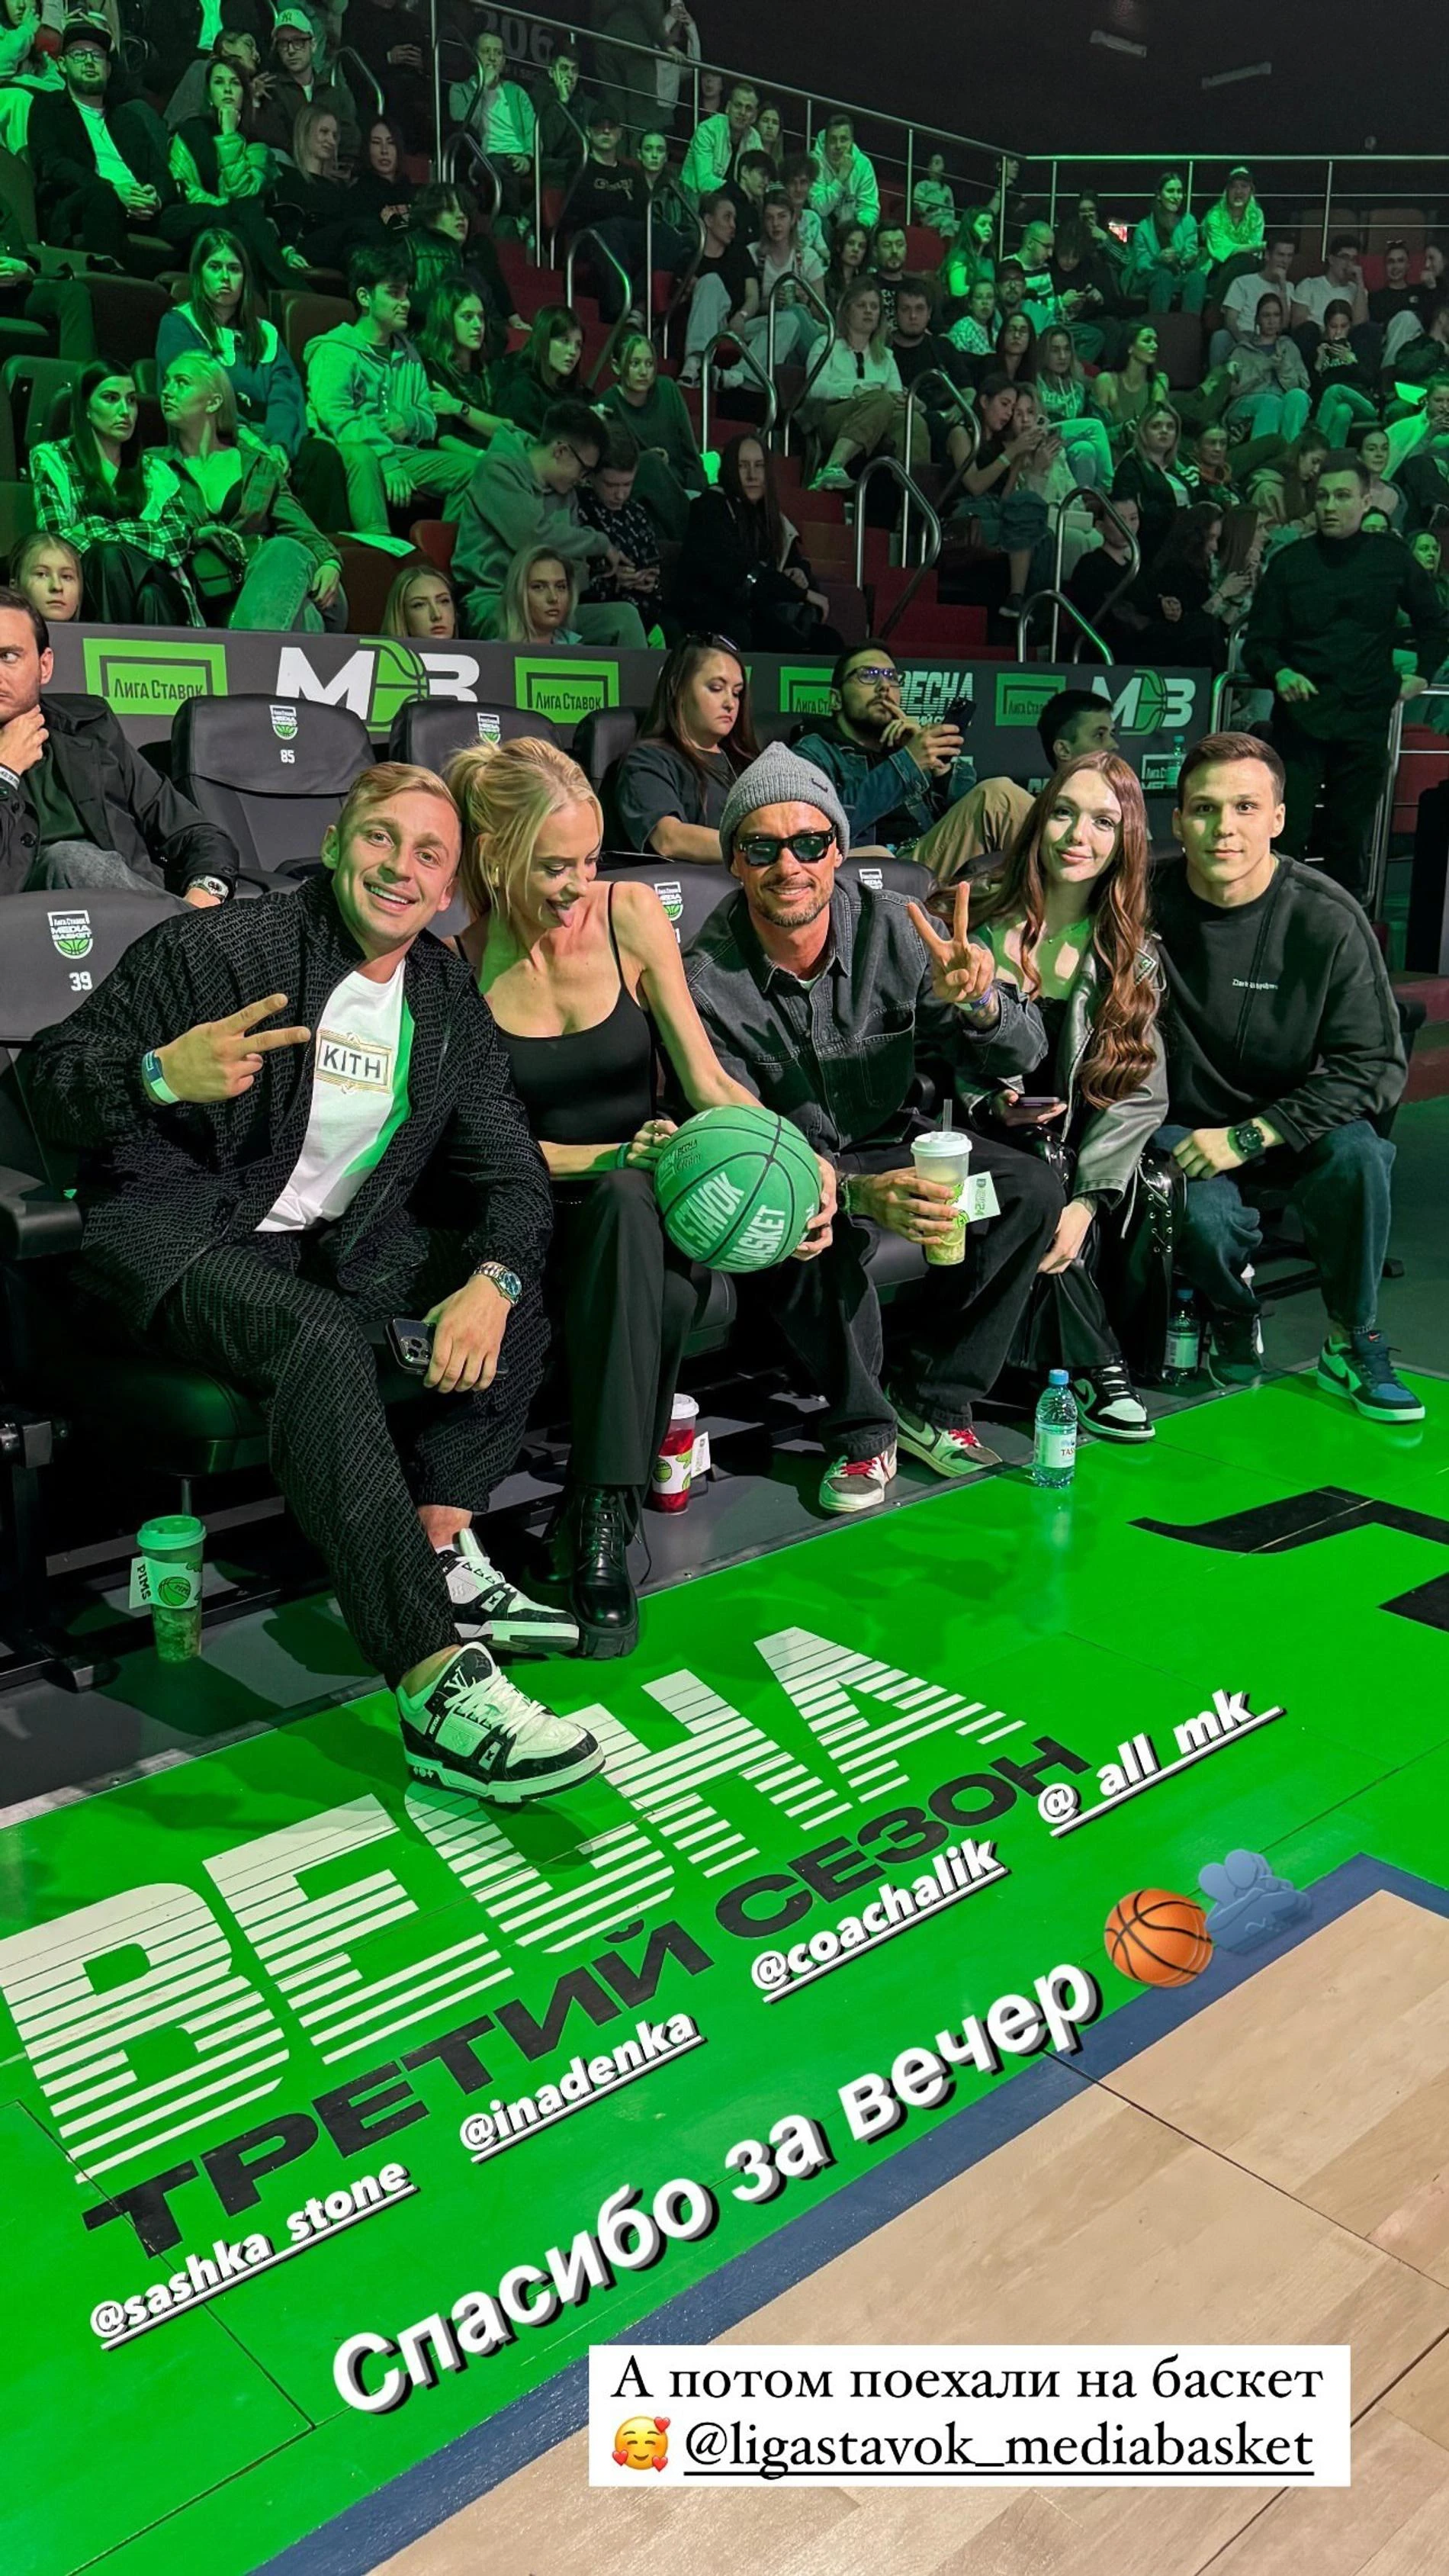 Саша Стоун и Надя Сысоева с друзьями на баскетбольном матче. Фото: Инстаграм* @inadenka